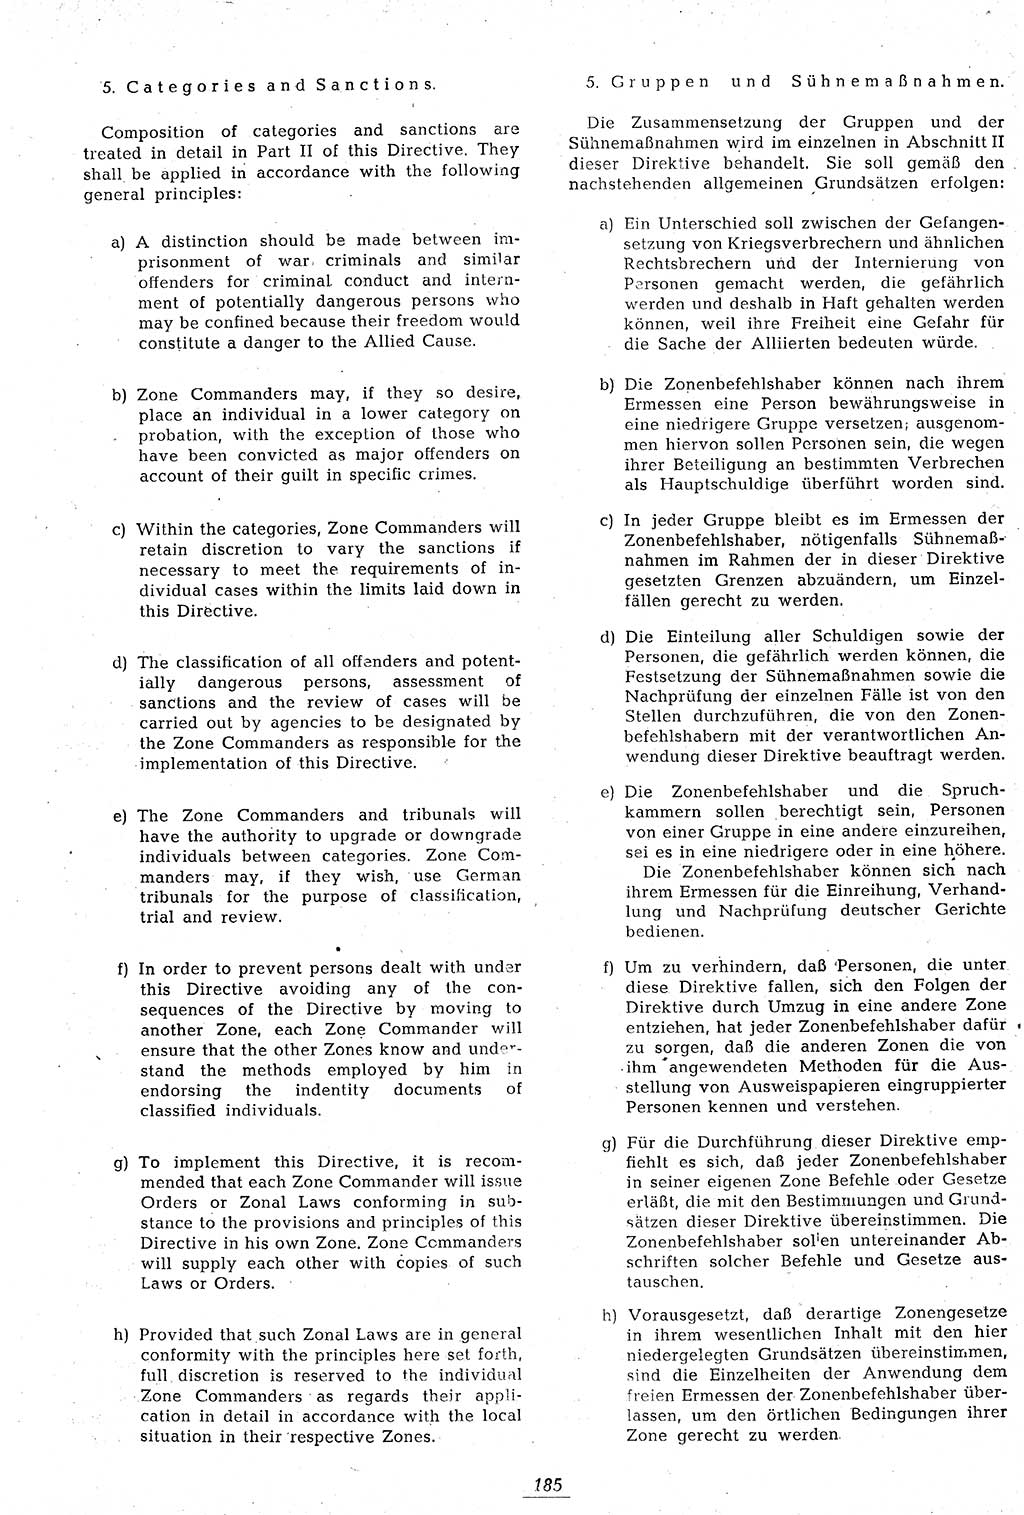 Amtsblatt des Kontrollrats (ABlKR) in Deutschland 1946, Seite 185/2 (ABlKR Dtl. 1946, S. 185/2)